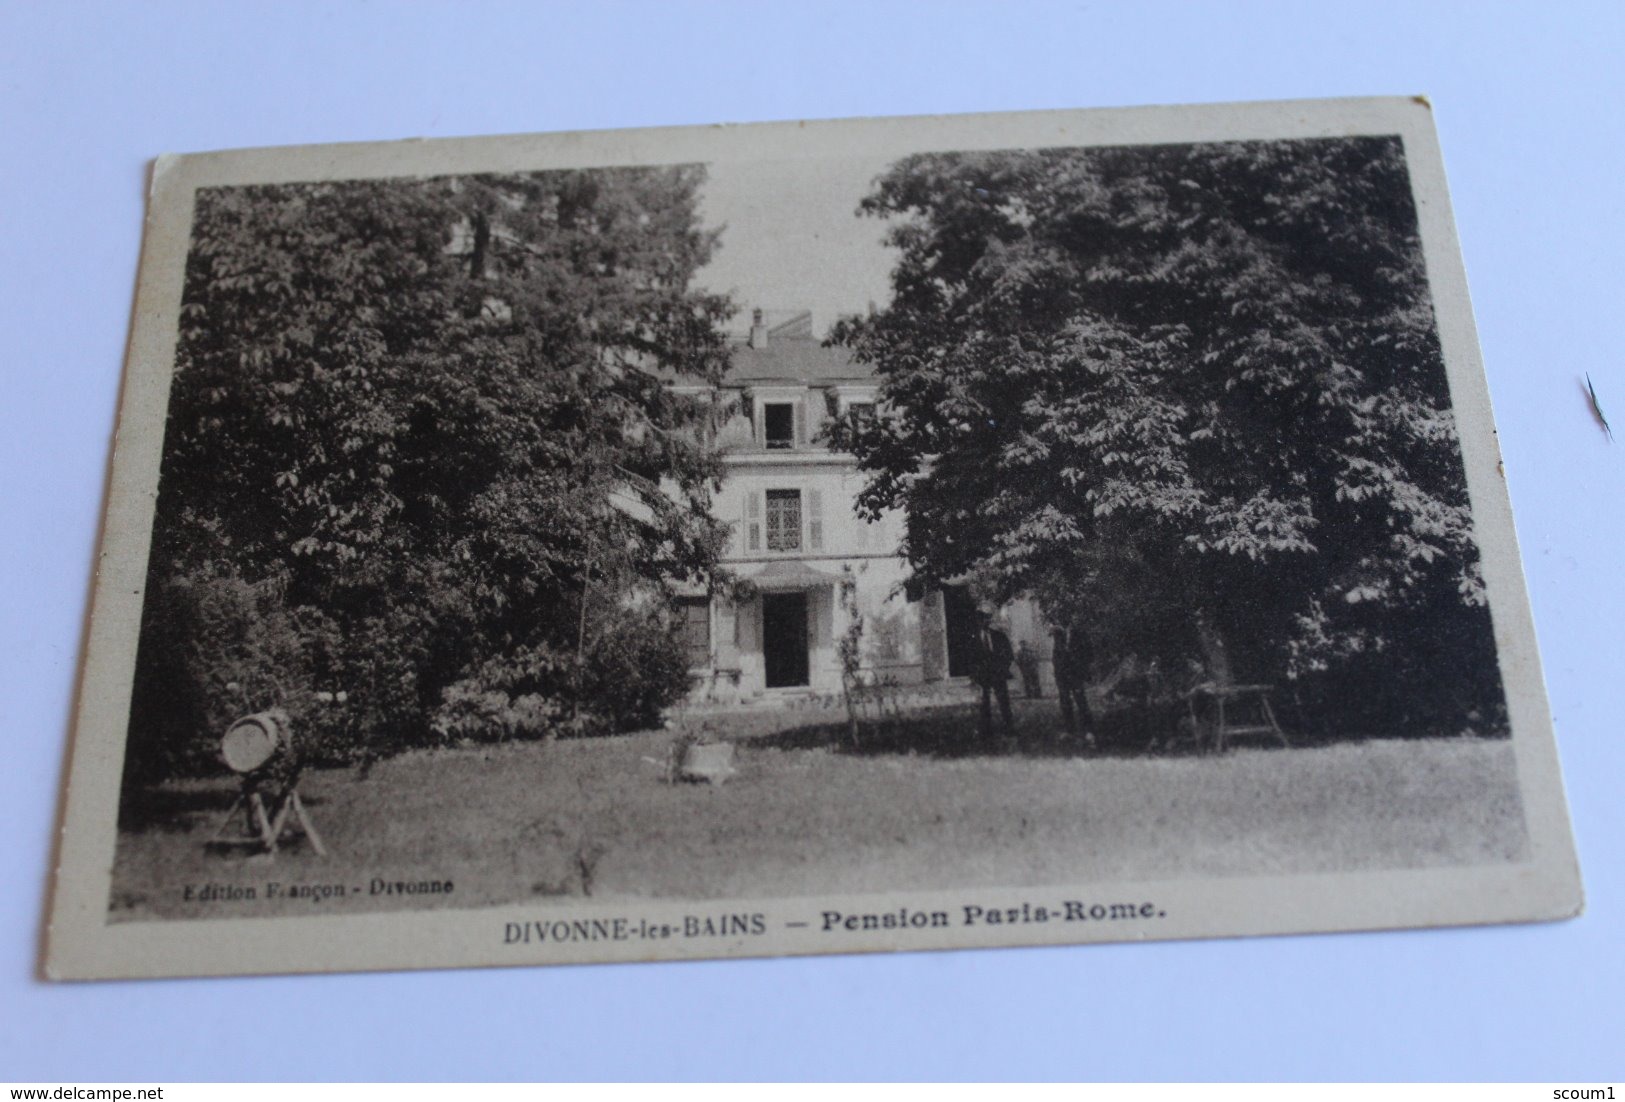 Divonne Les Bains - Pension Paris-rome - 1927 - Divonne Les Bains